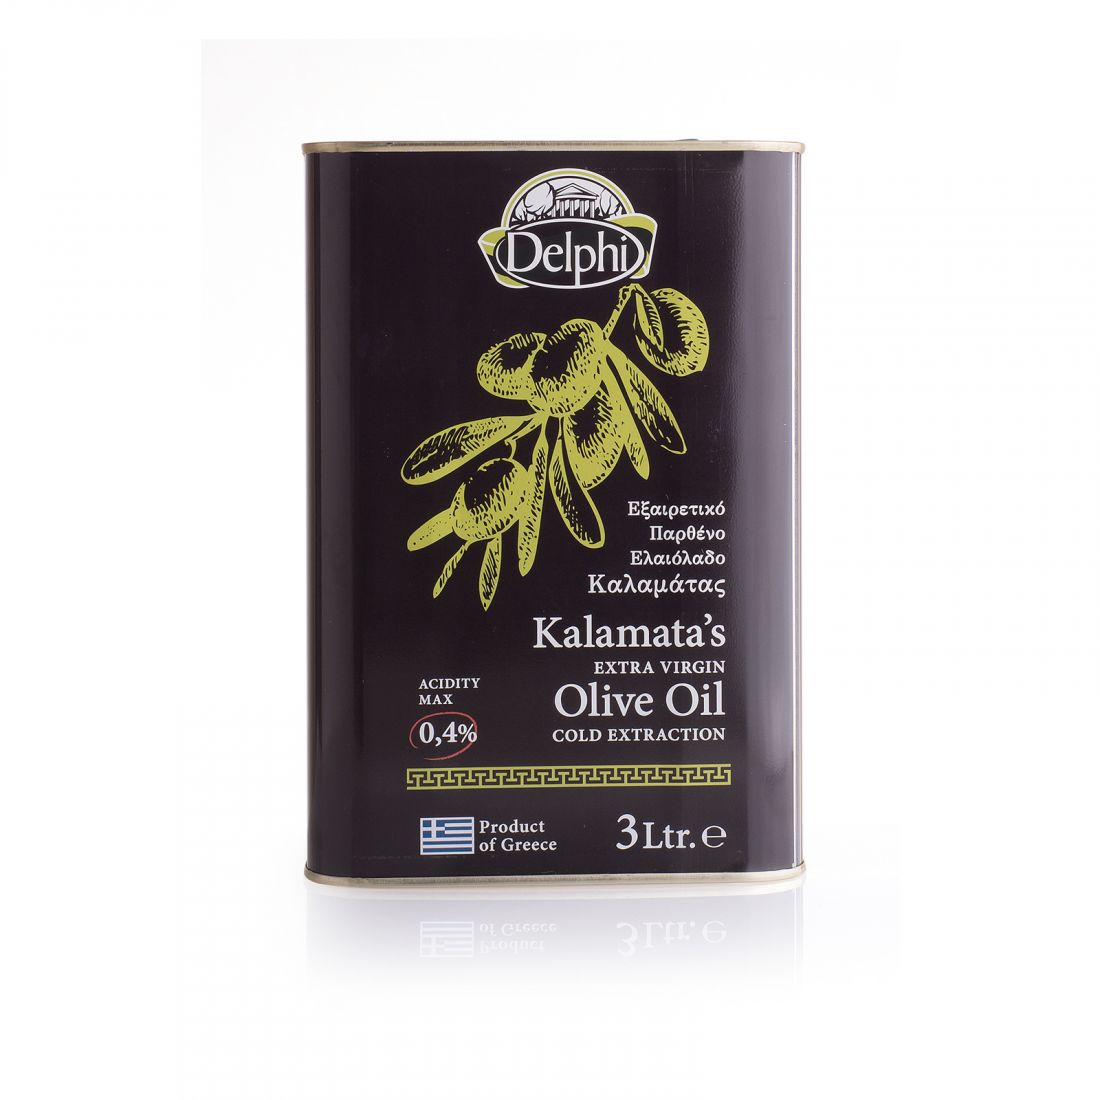 Оливковое масло Каламата DELPHI  - 3 литра прямого отжима из оливок, салатное греческое кислотность 0,3, жесть